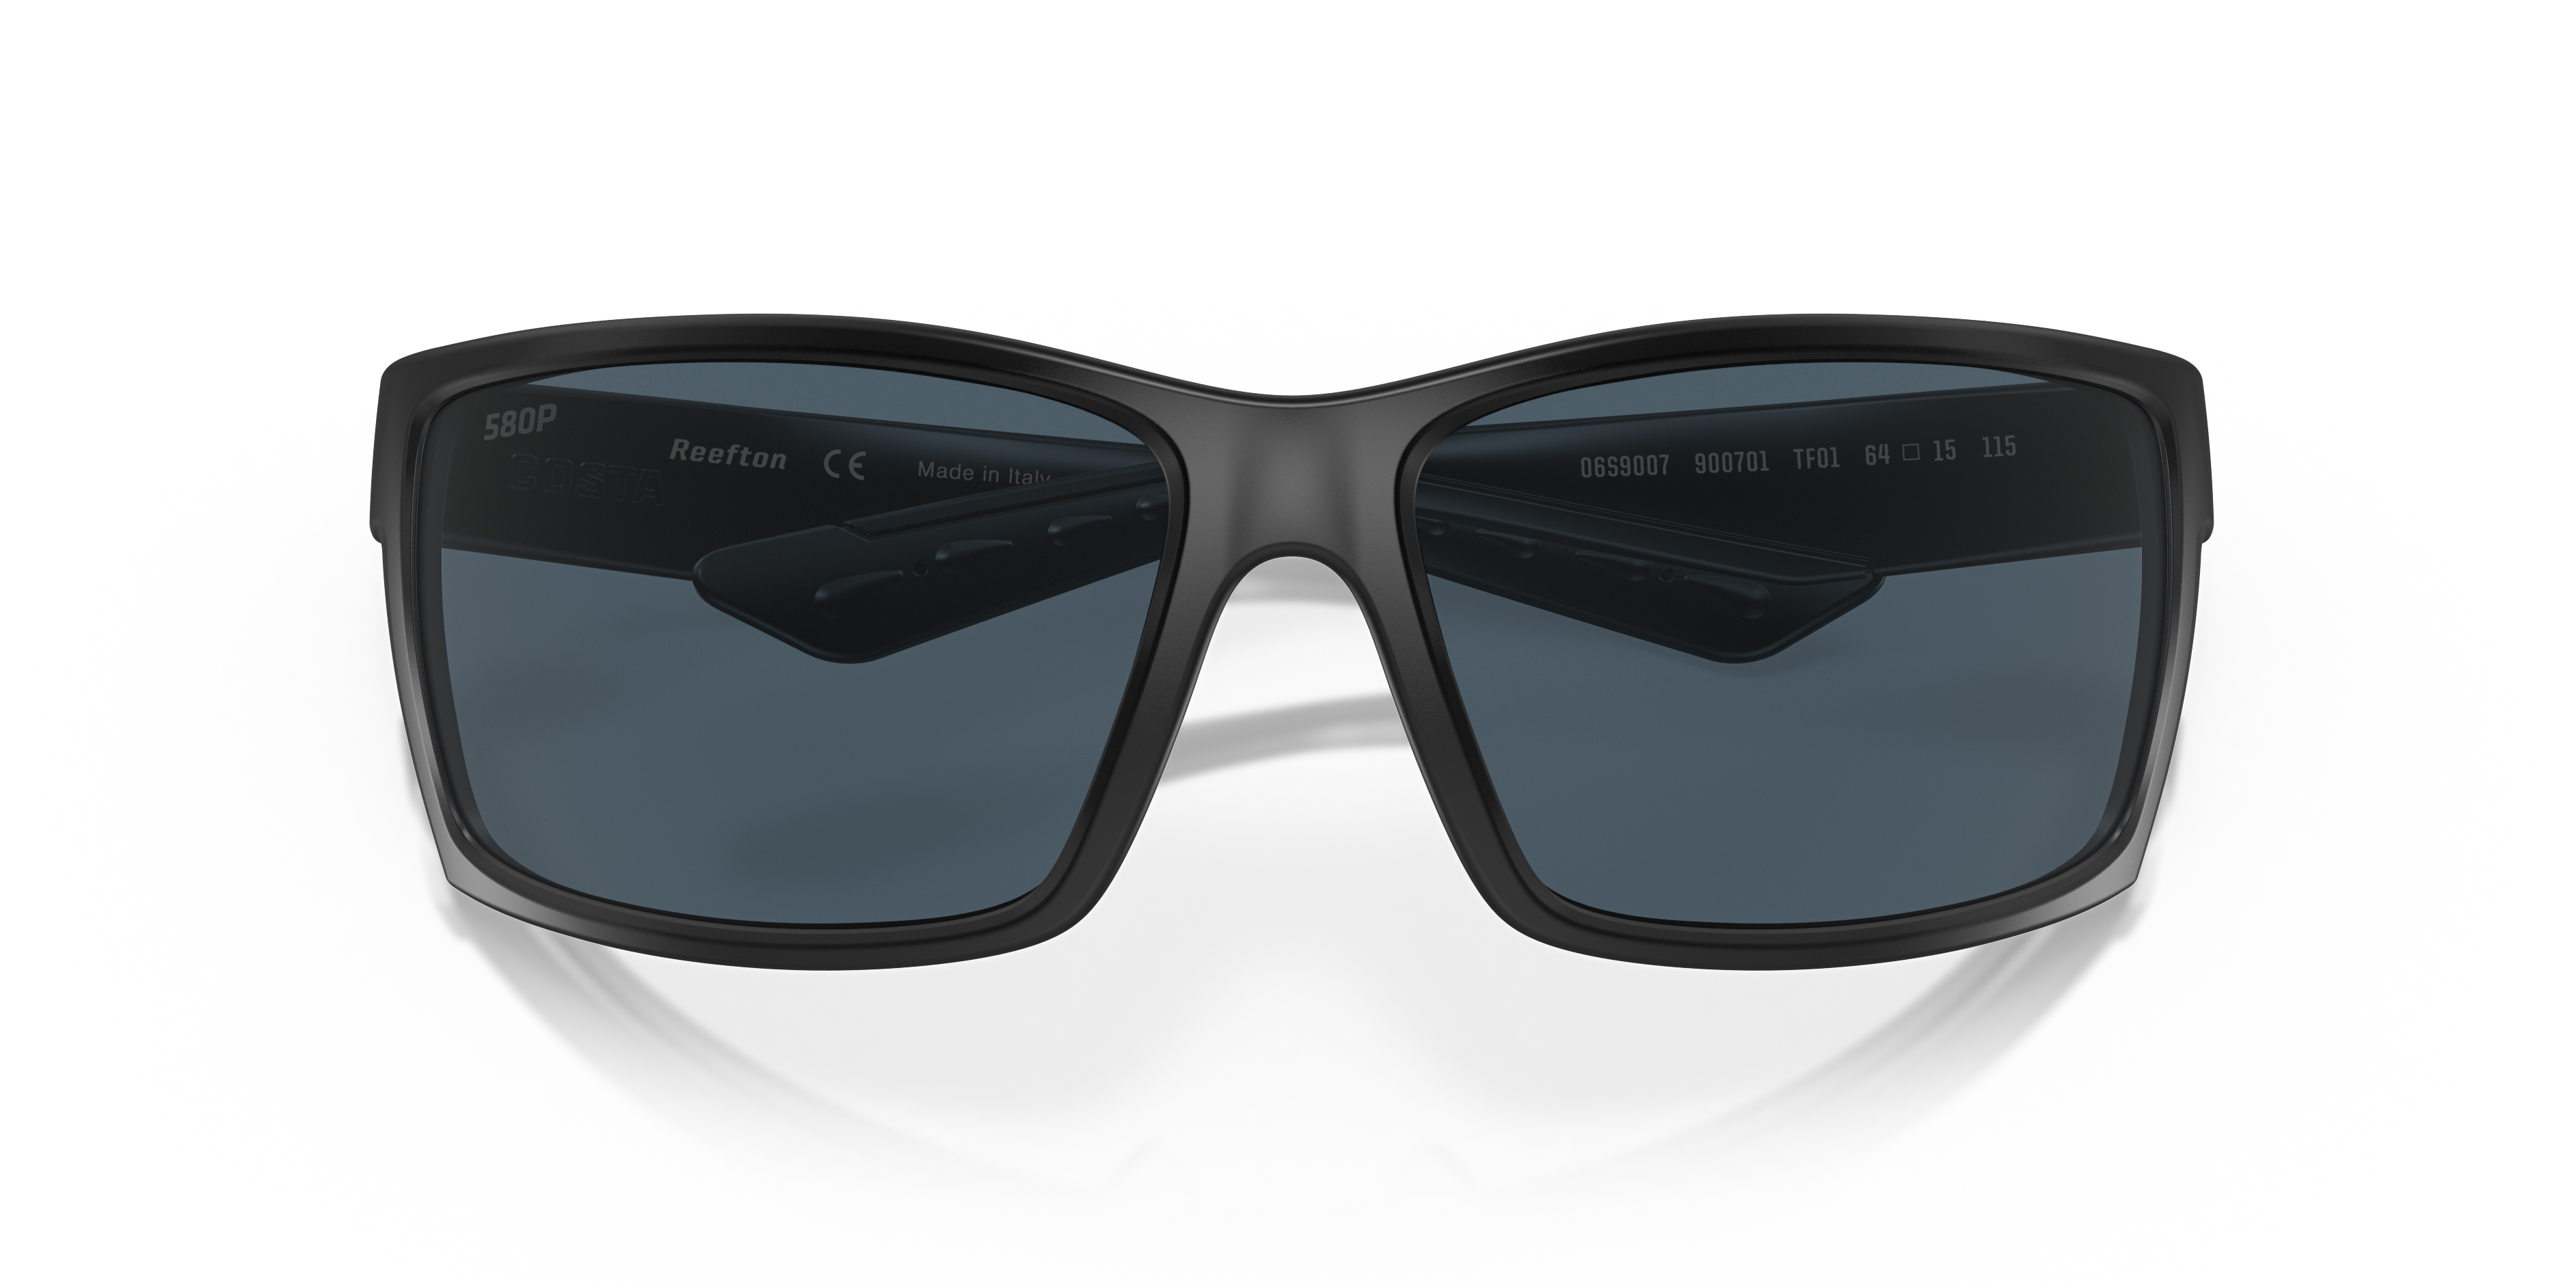 discount 64% Black Single Hawkers sunglasses WOMEN FASHION Accessories Sunglasses 